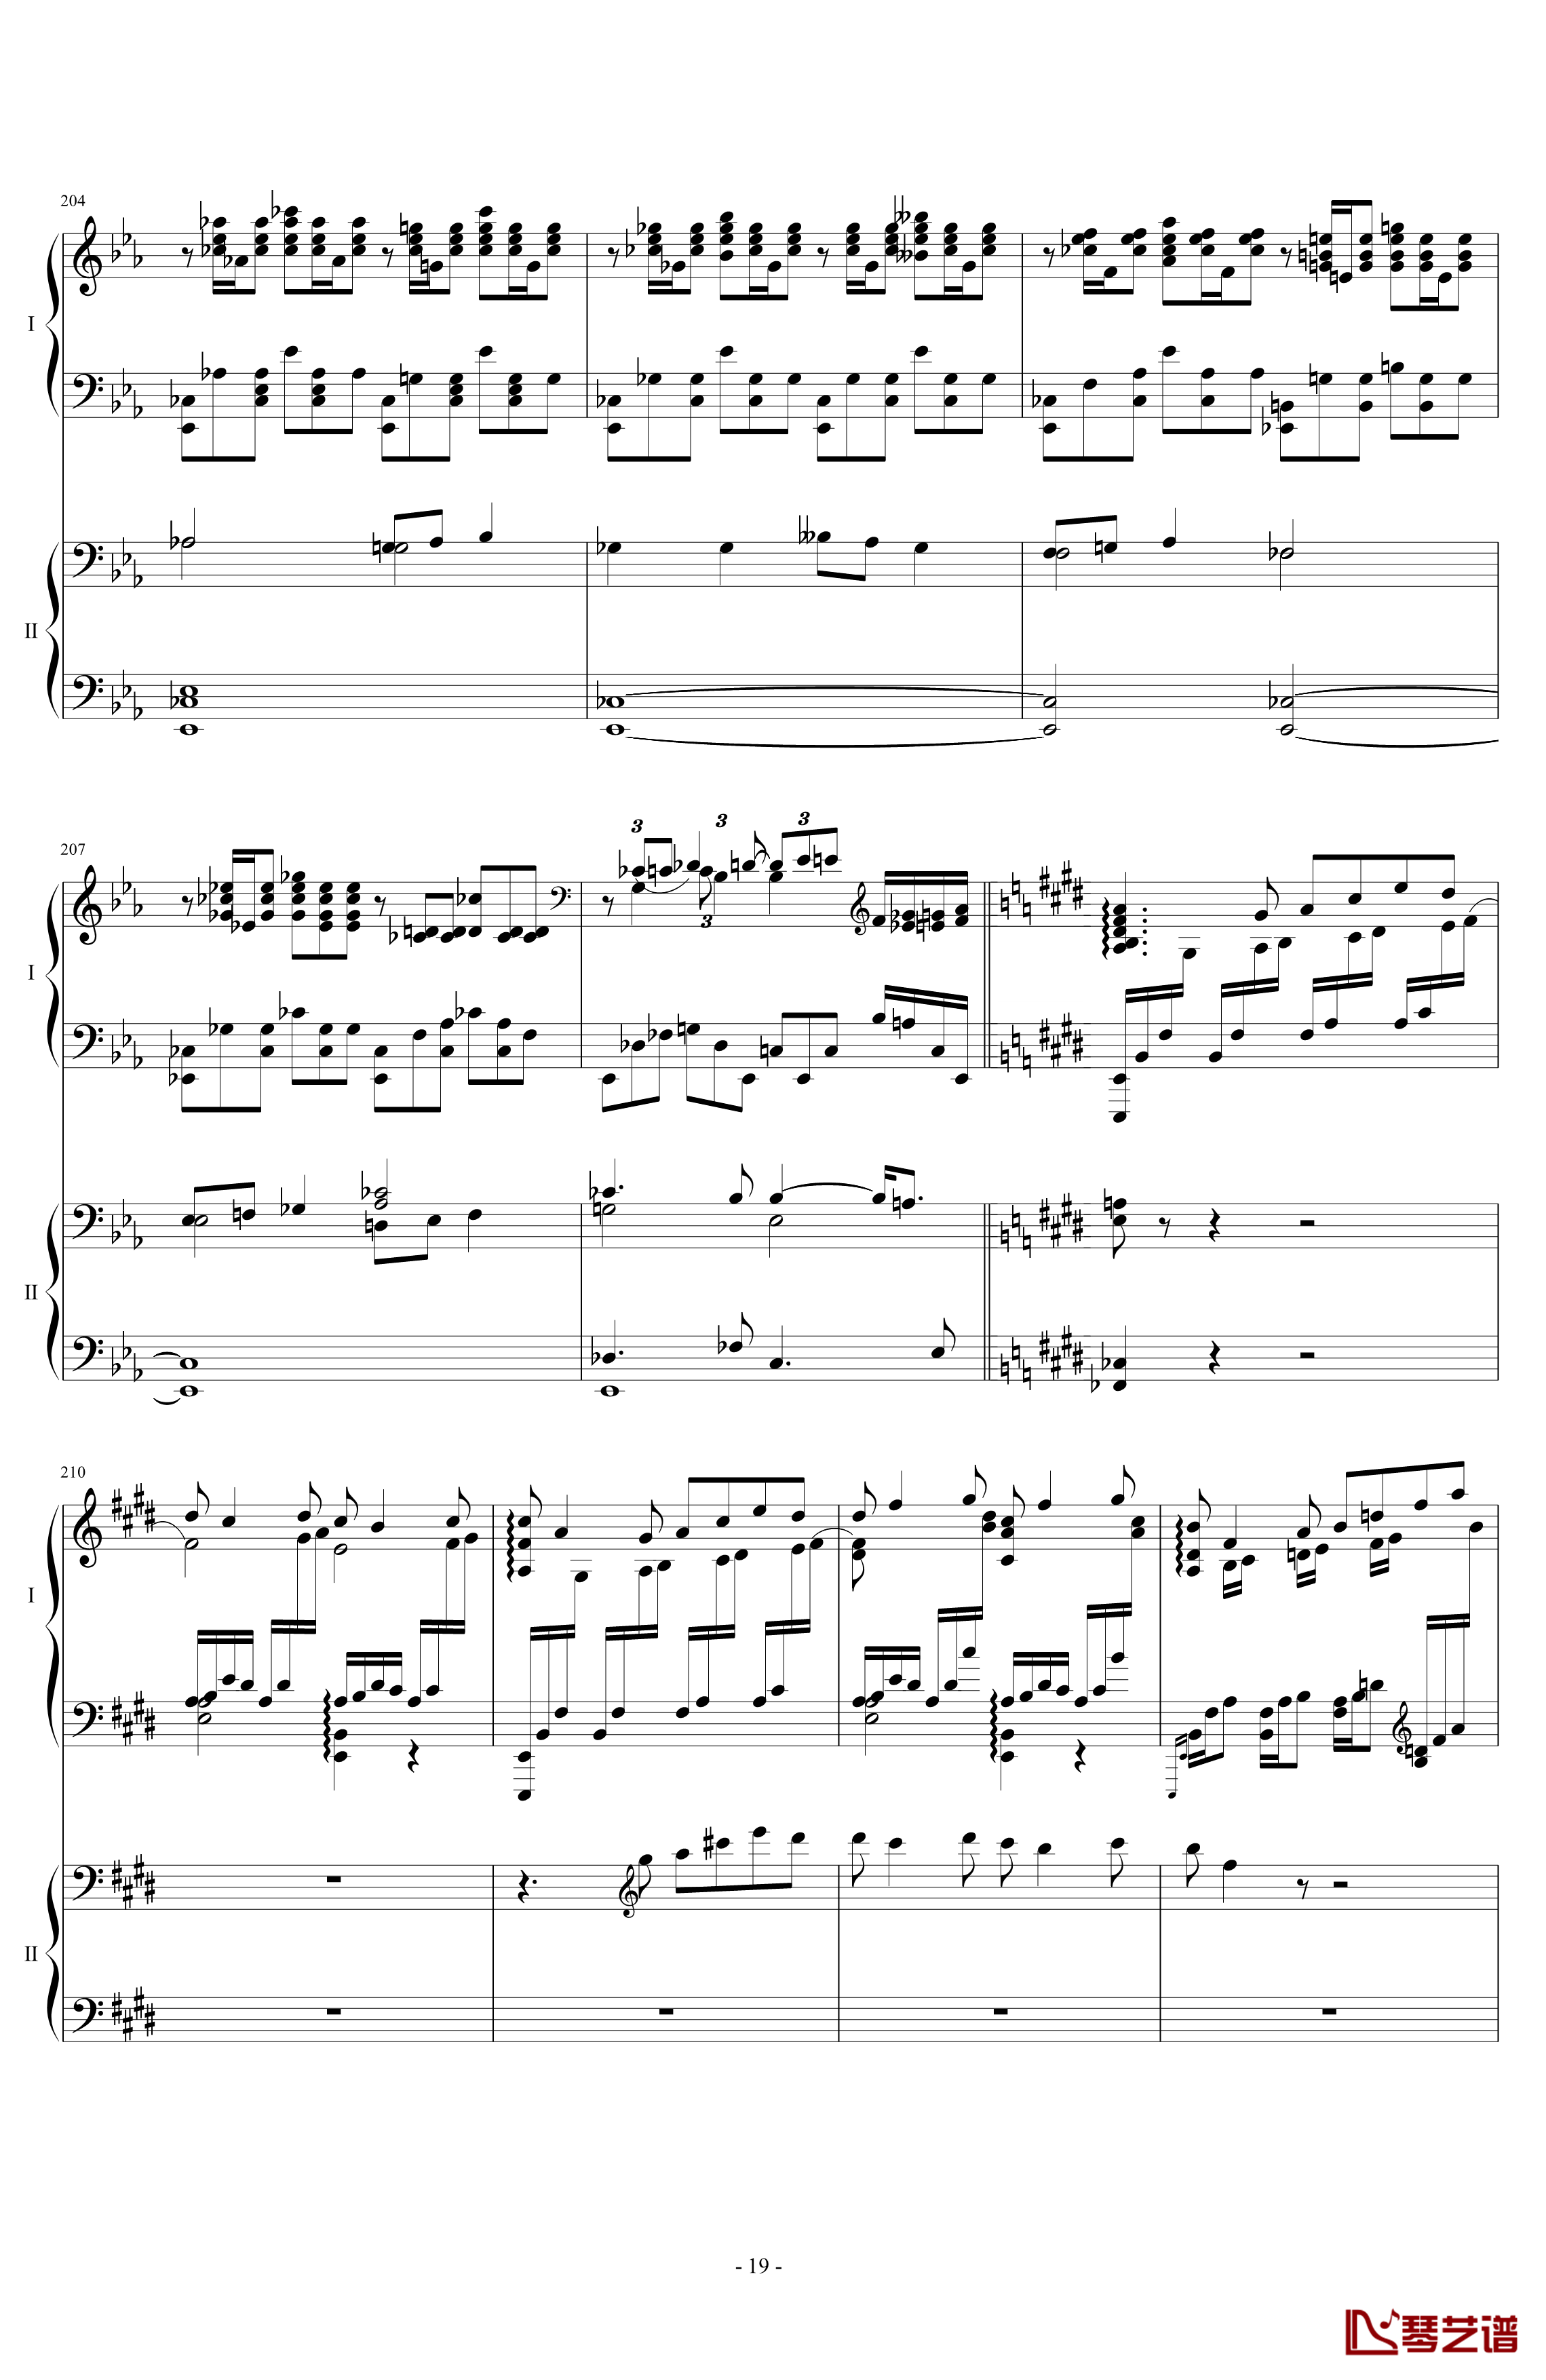 拉三第三乐章41页双钢琴钢琴谱-最难钢琴曲-拉赫马尼若夫19